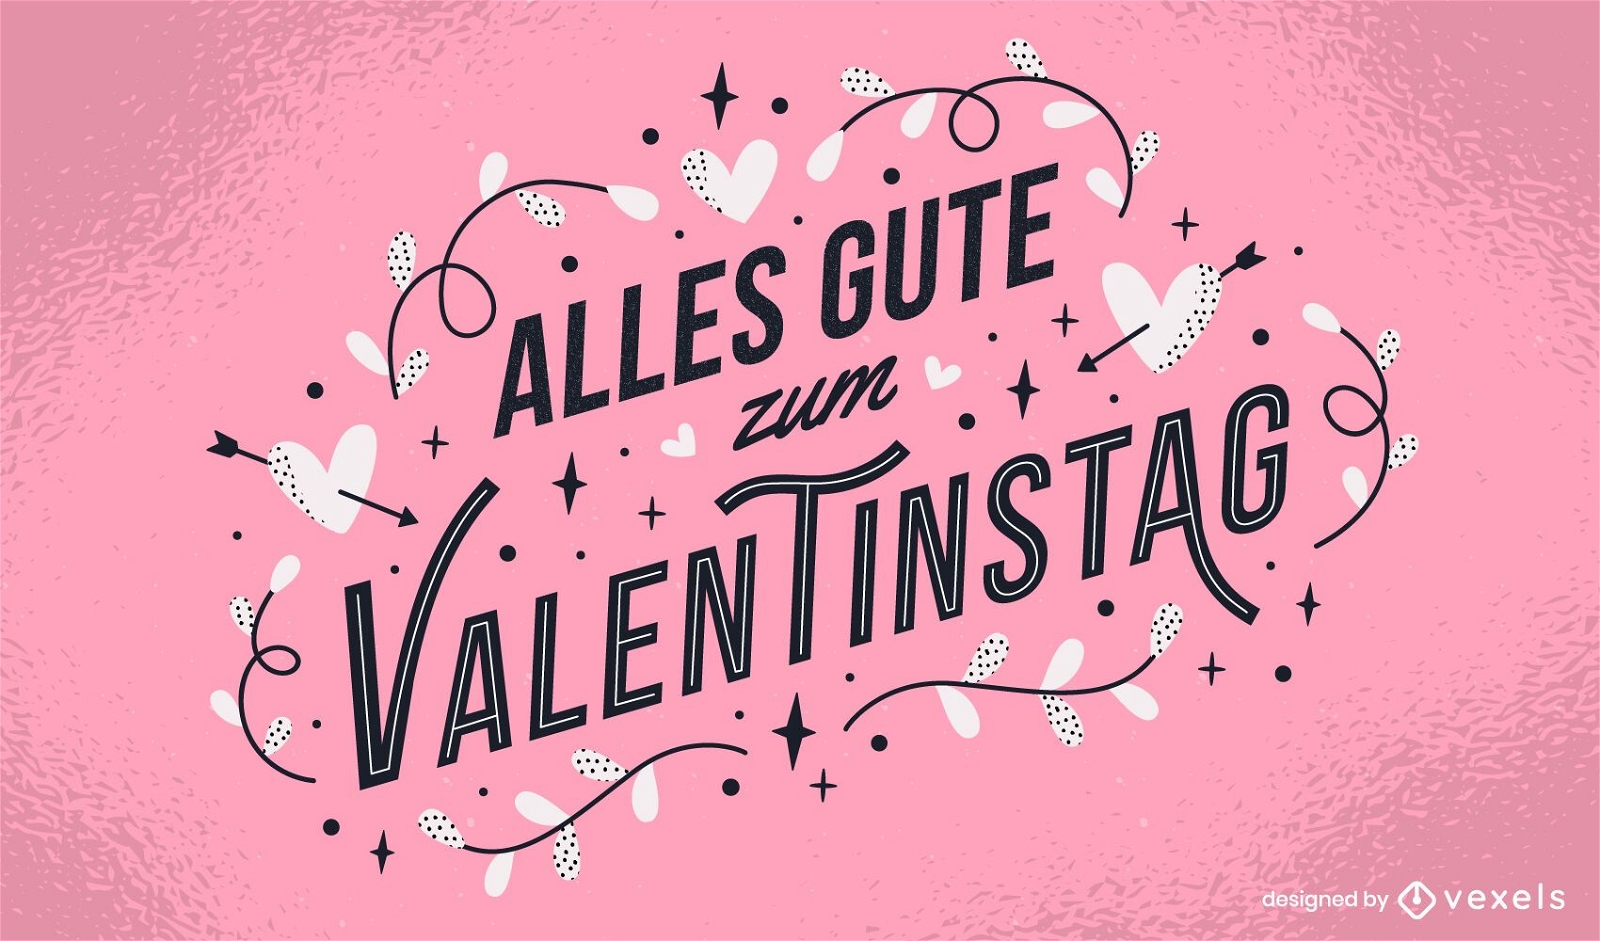 Valentinstag desenho de letras alem?s